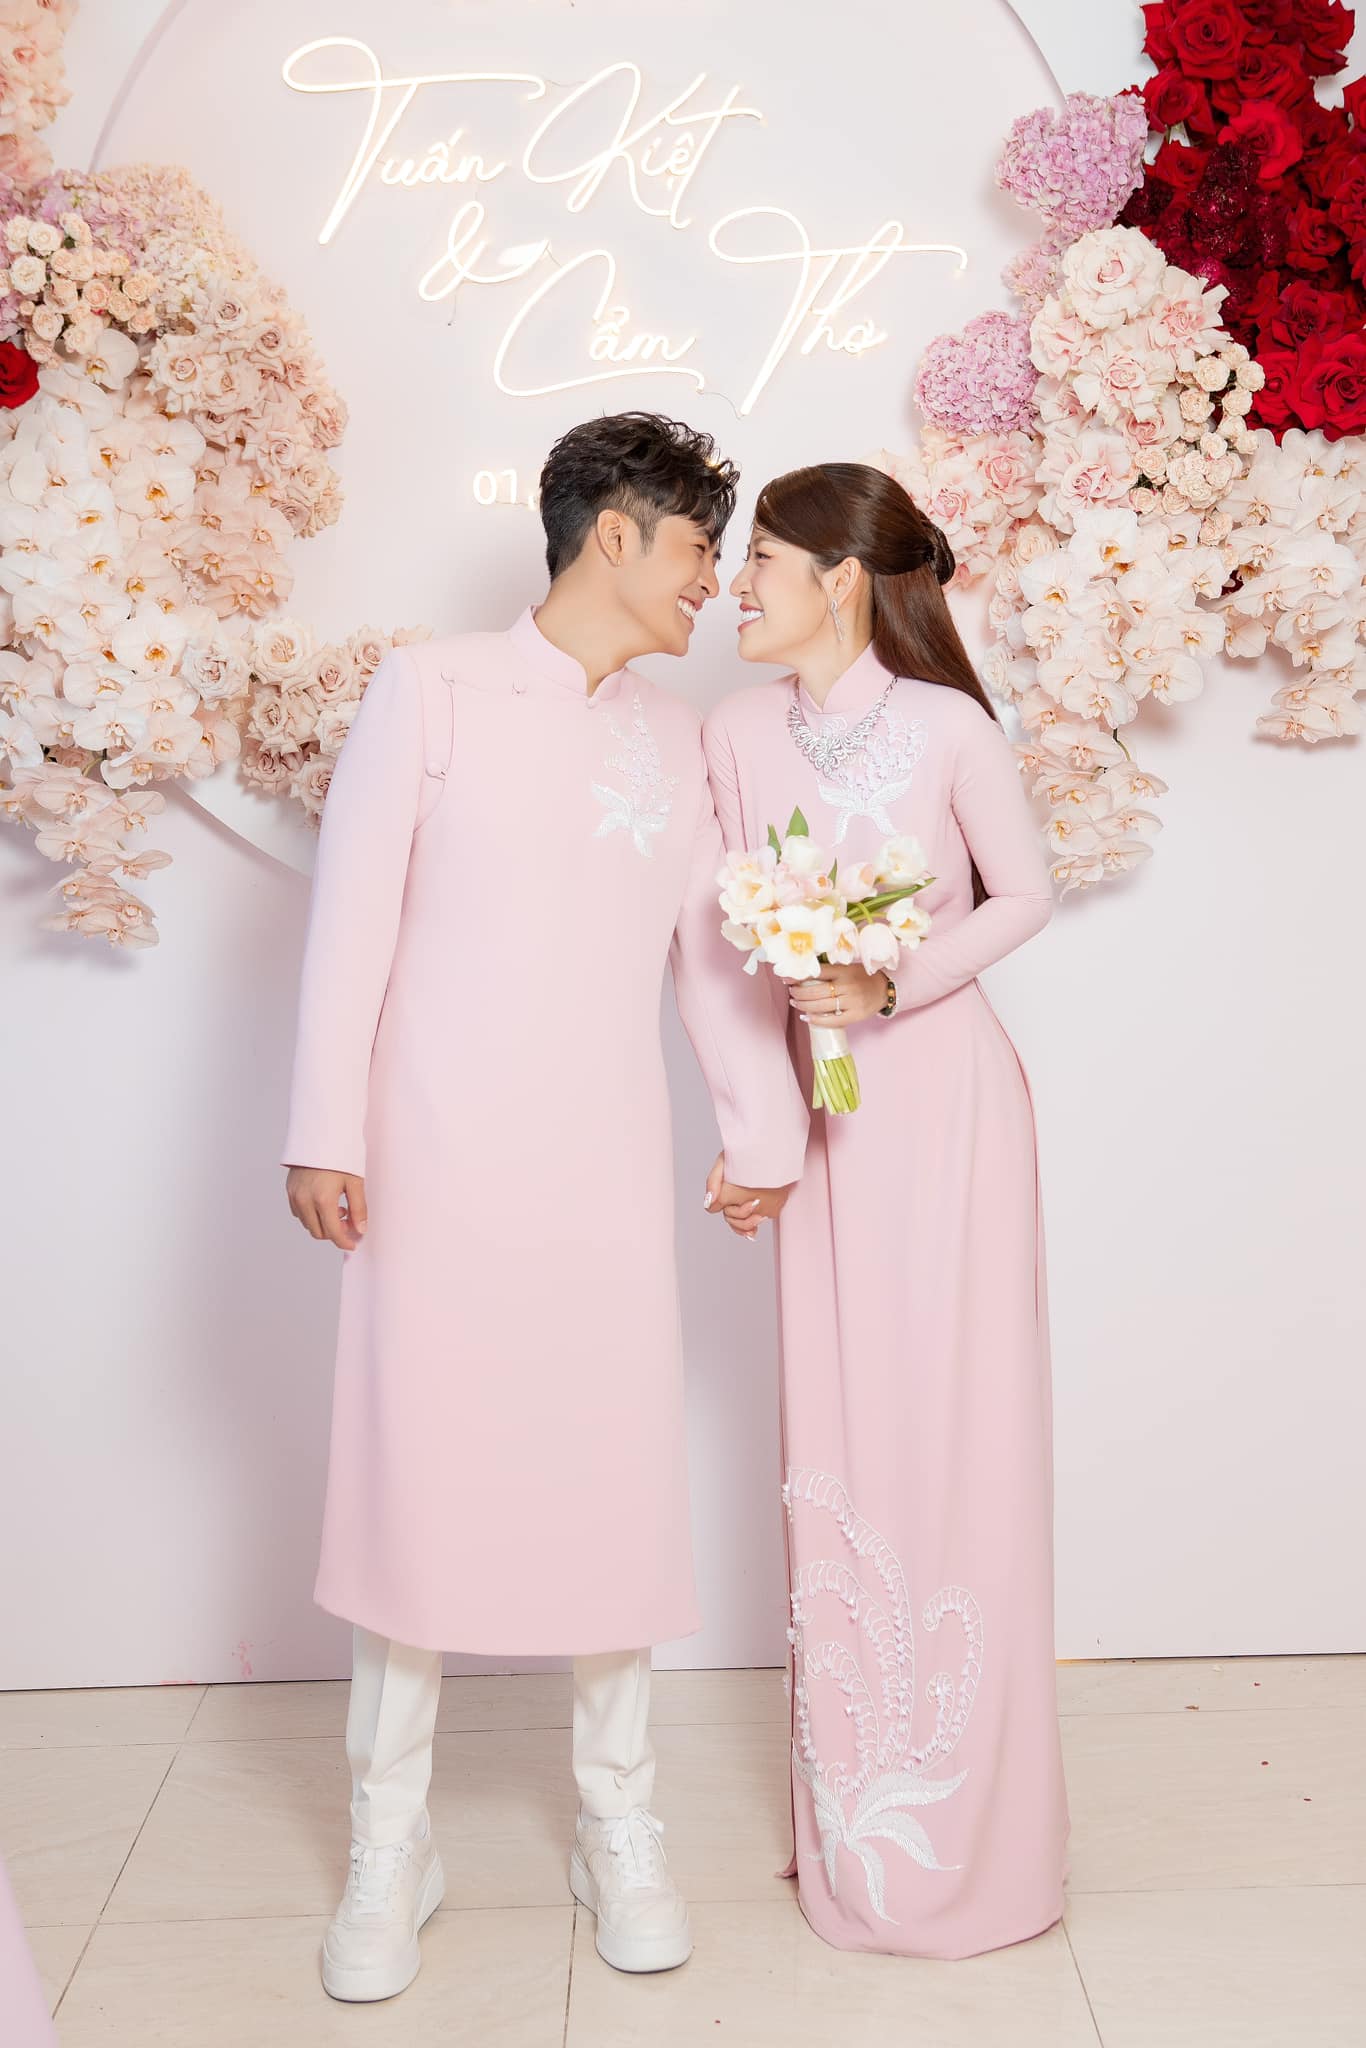 Đám cưới Puka và Gin Tuấn Kiệt khiến cả showbiz rần rần như Tết, Minh Tú hé lộ tin nhắn nhóm kín - ảnh 6